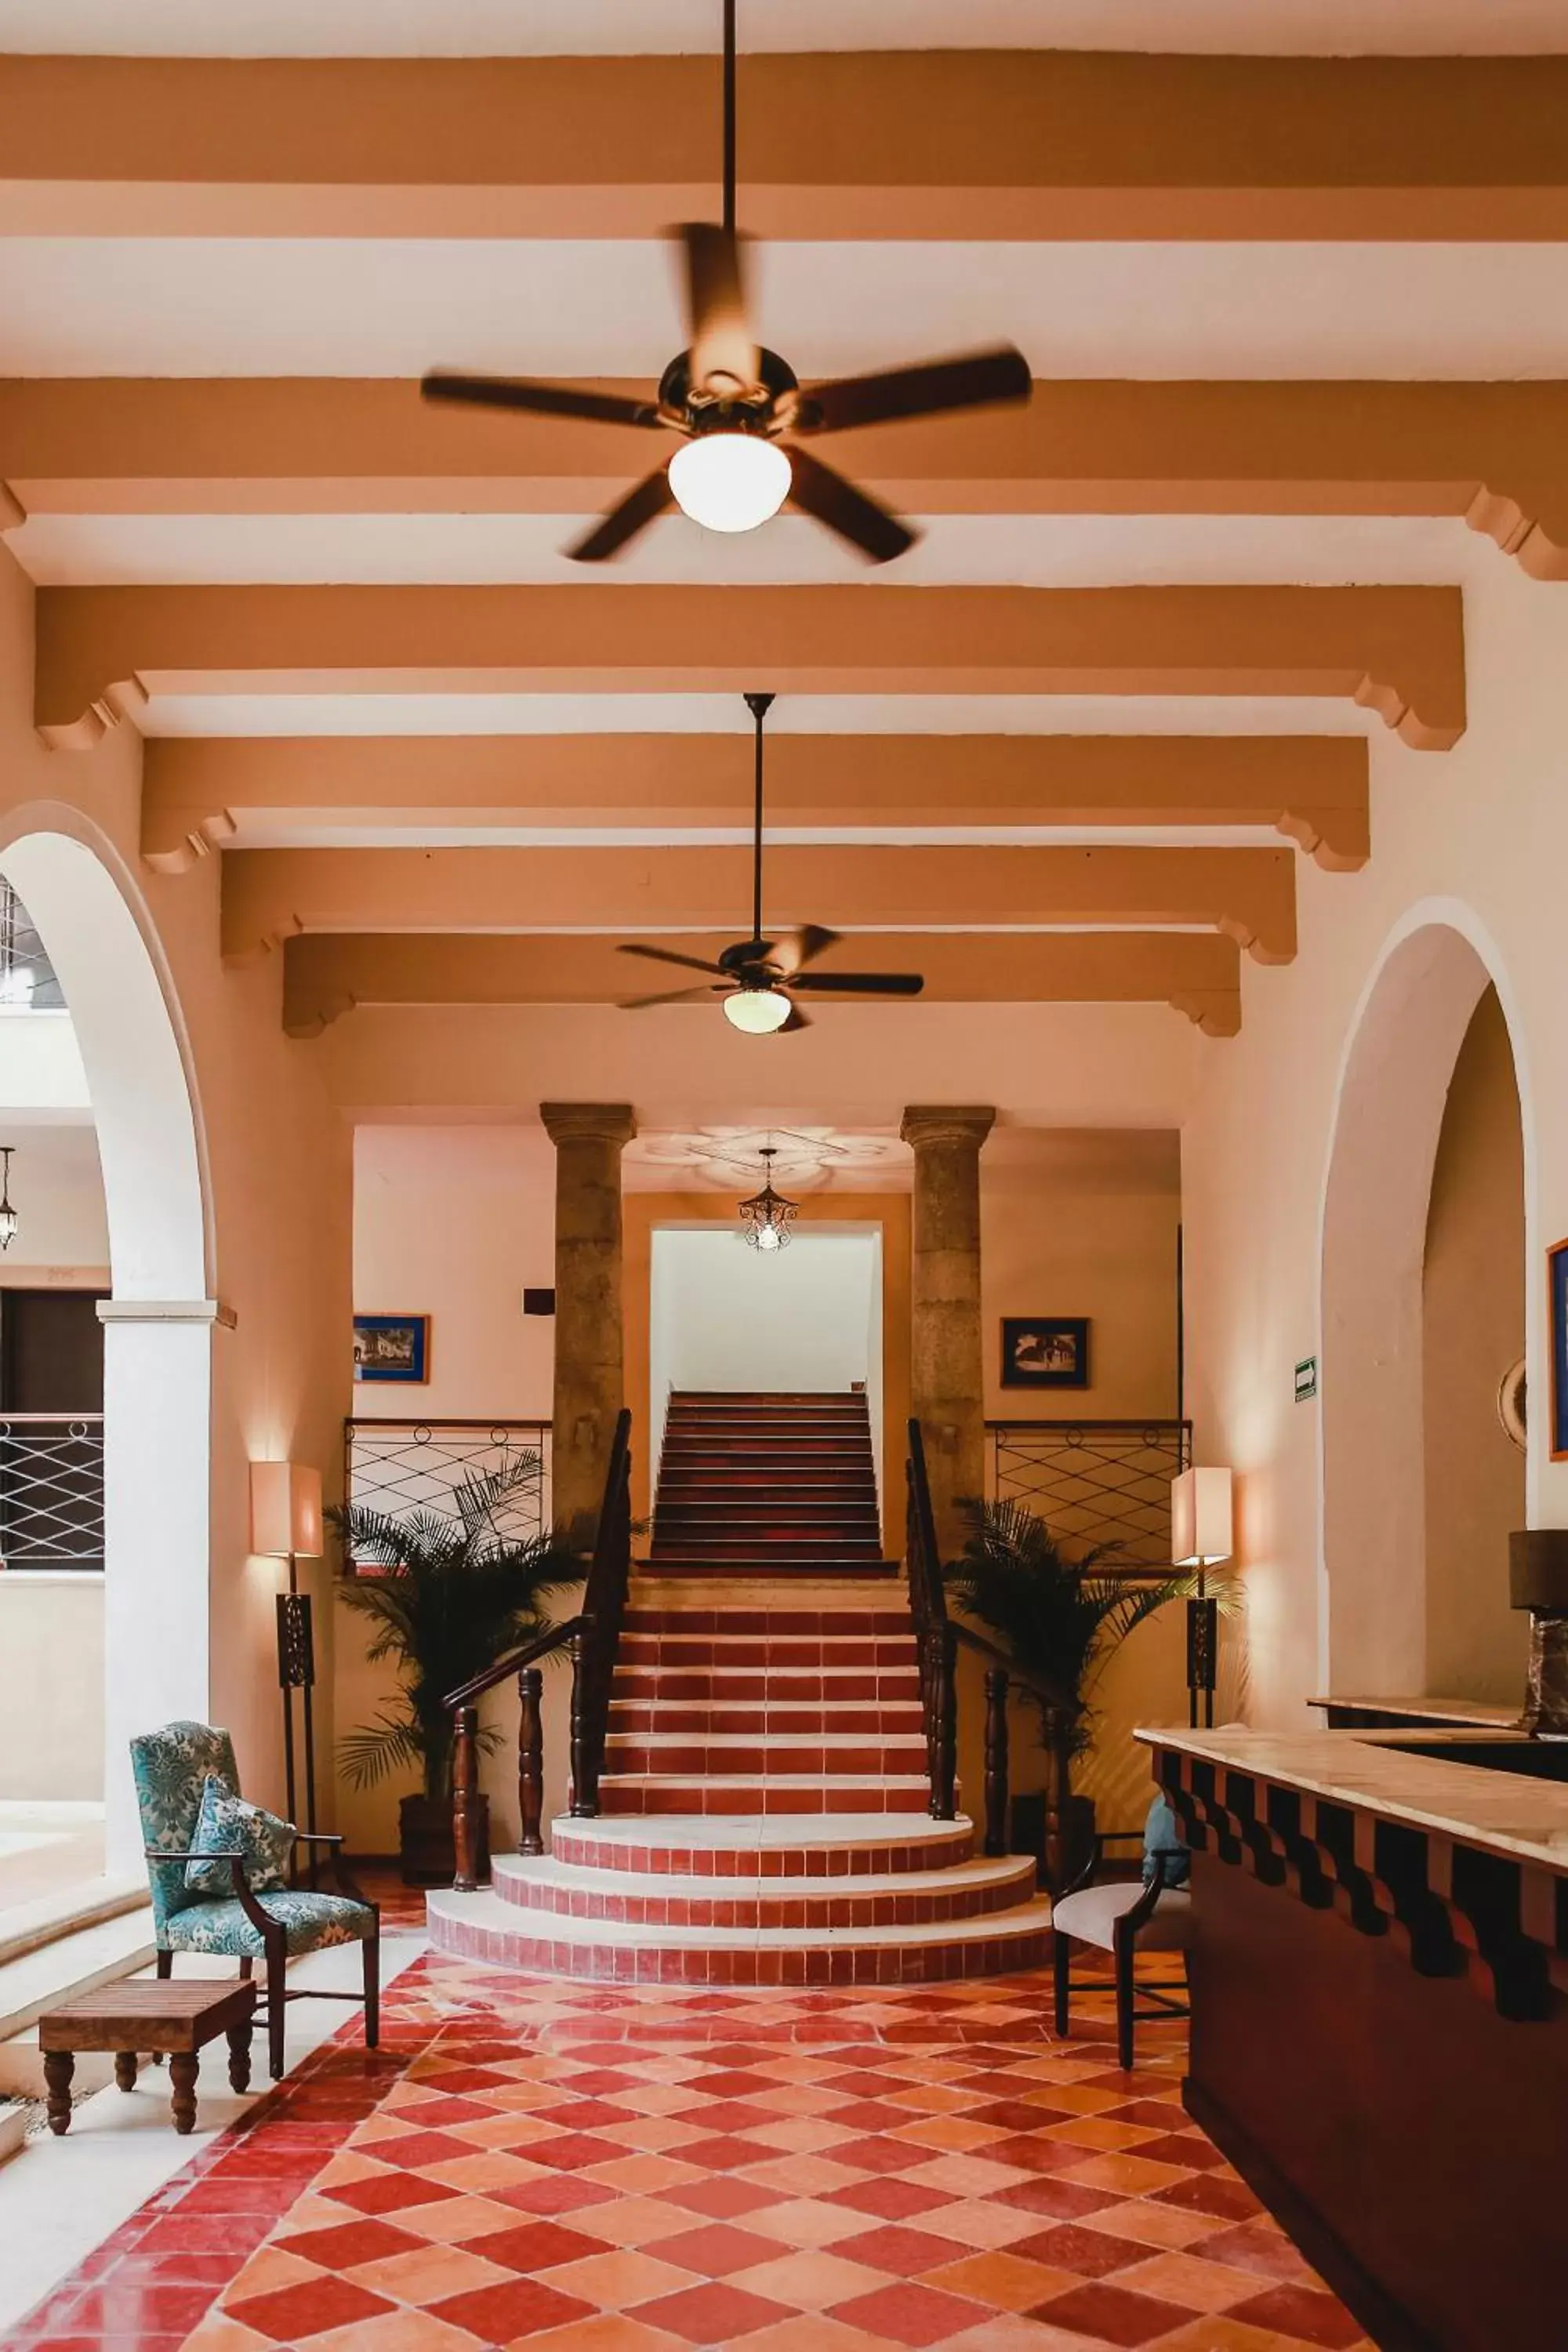 Lobby or reception in Hotel Merida